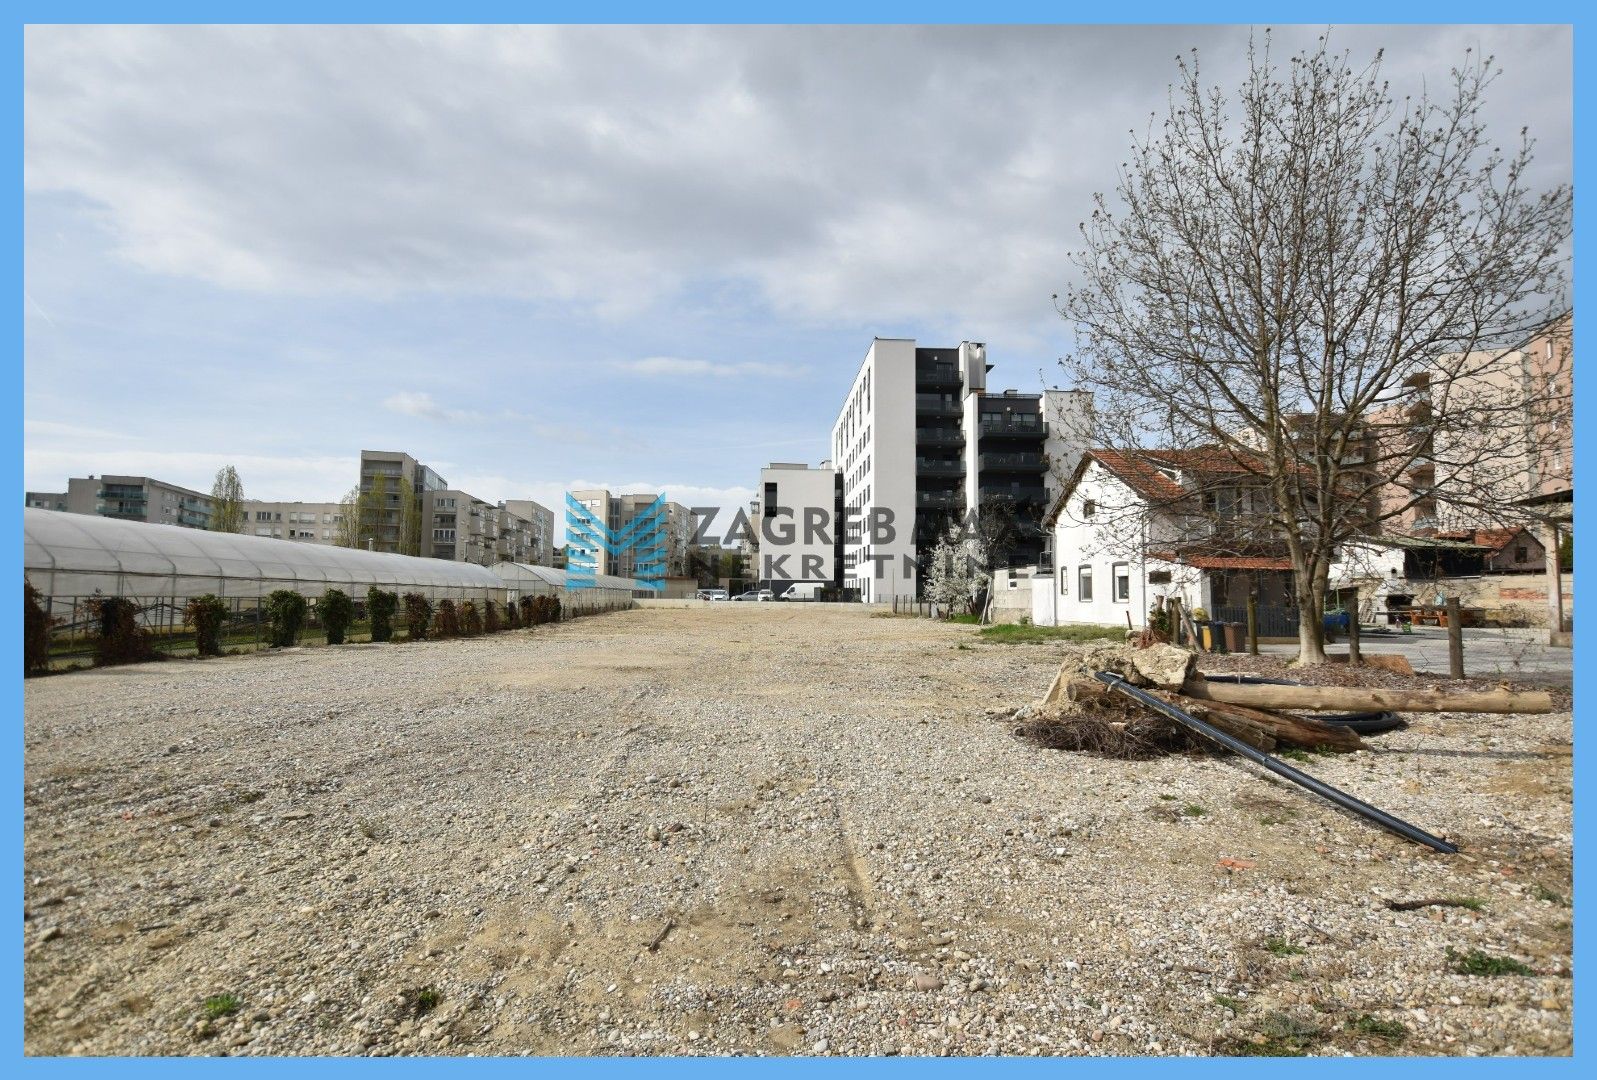 Zagreb - NAJAM - ŠPANSKO zakup zemljišta od 2200 m2,  atraktivna lokacija, otvoreno ograđeno skladište